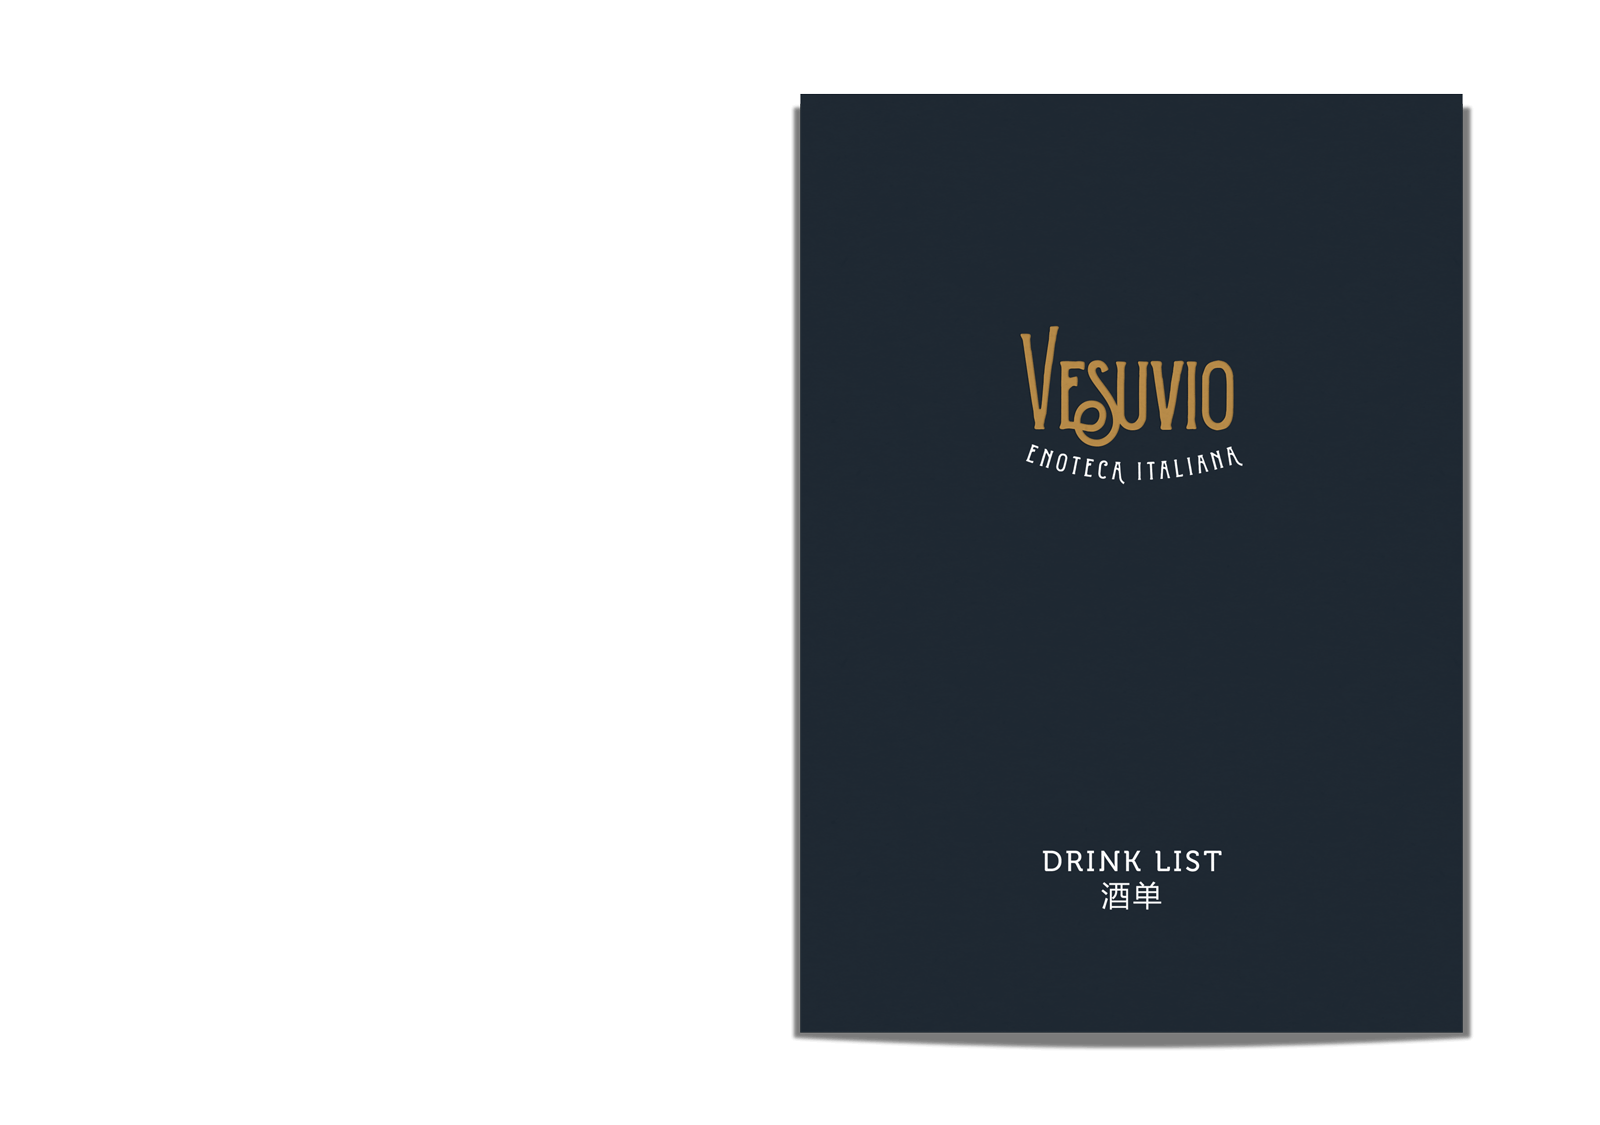 vesuvio-menu-01-o